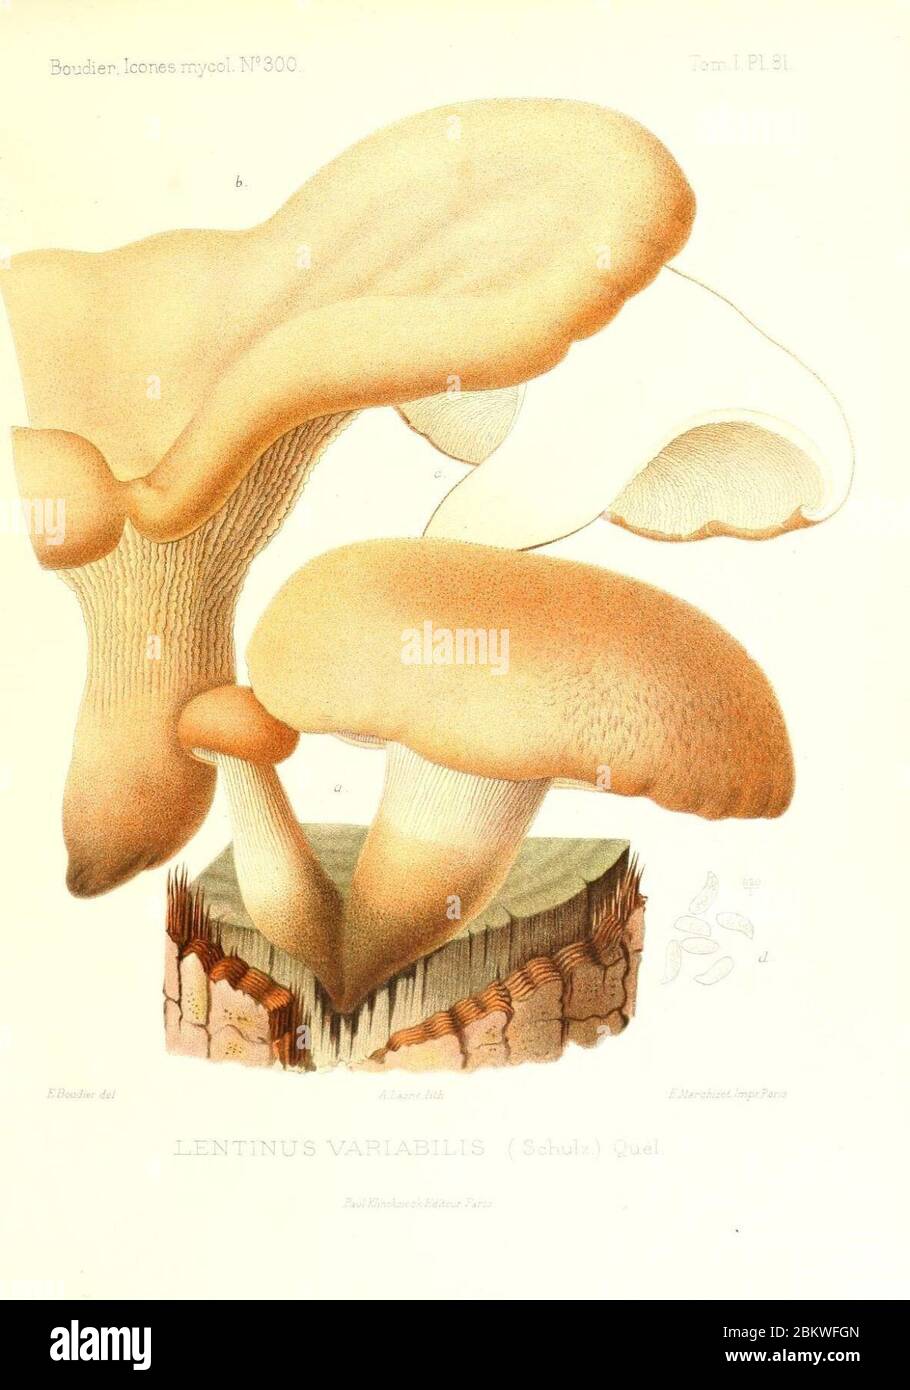 Icones mycologicæ, ou Iconographie des champignons de France principalement Discomycetes (Pl. 81) (9800995824). Stock Photo